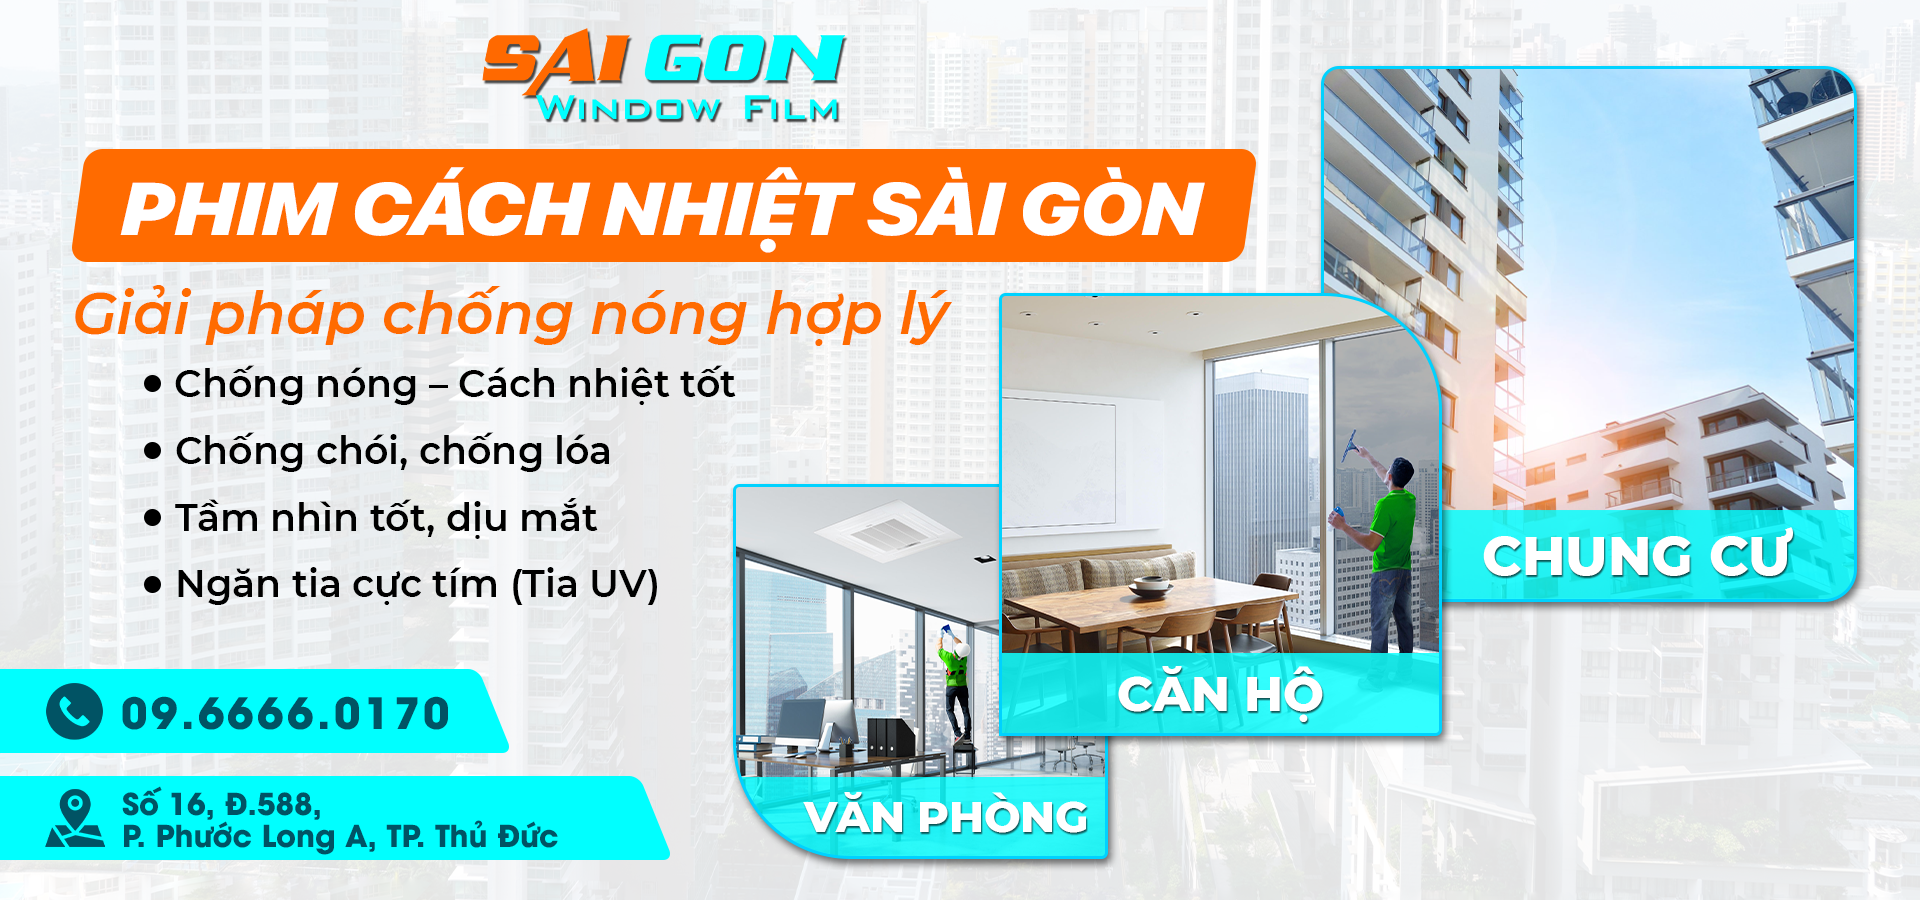 Phim Cách Nhiệt Sài Gòn - Đơn vị cung cấp dịch vụ dán phim cách nhiệt nhà kính tại Đồng Nai chất lượng